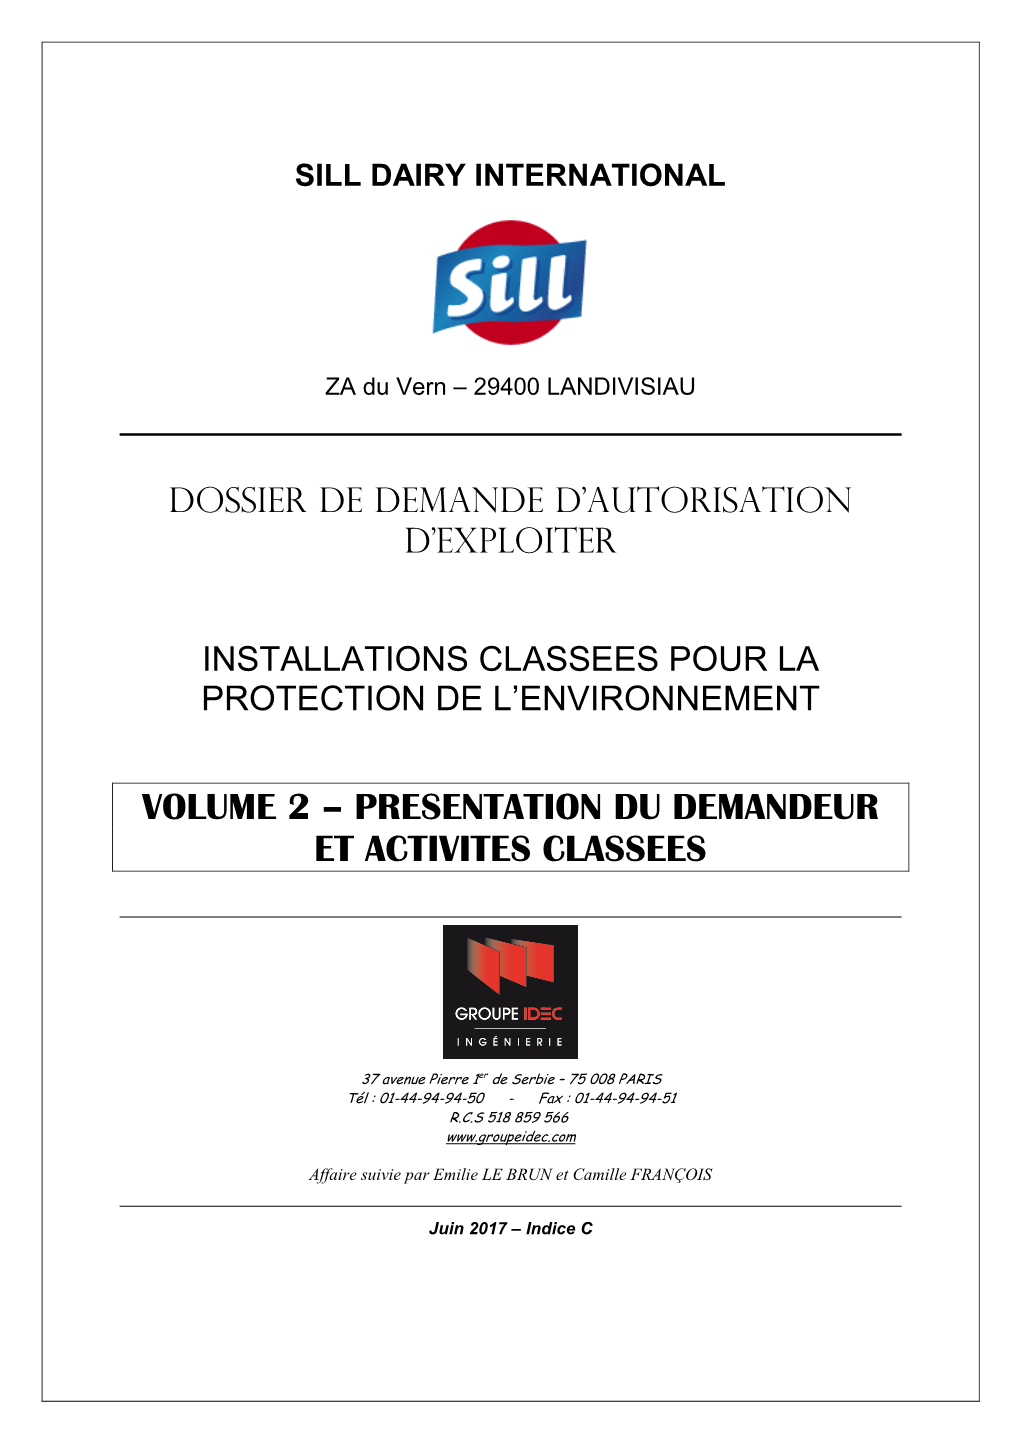 2-Vol2-Indc-Presentation Demandeur-Sill-Landivisiau